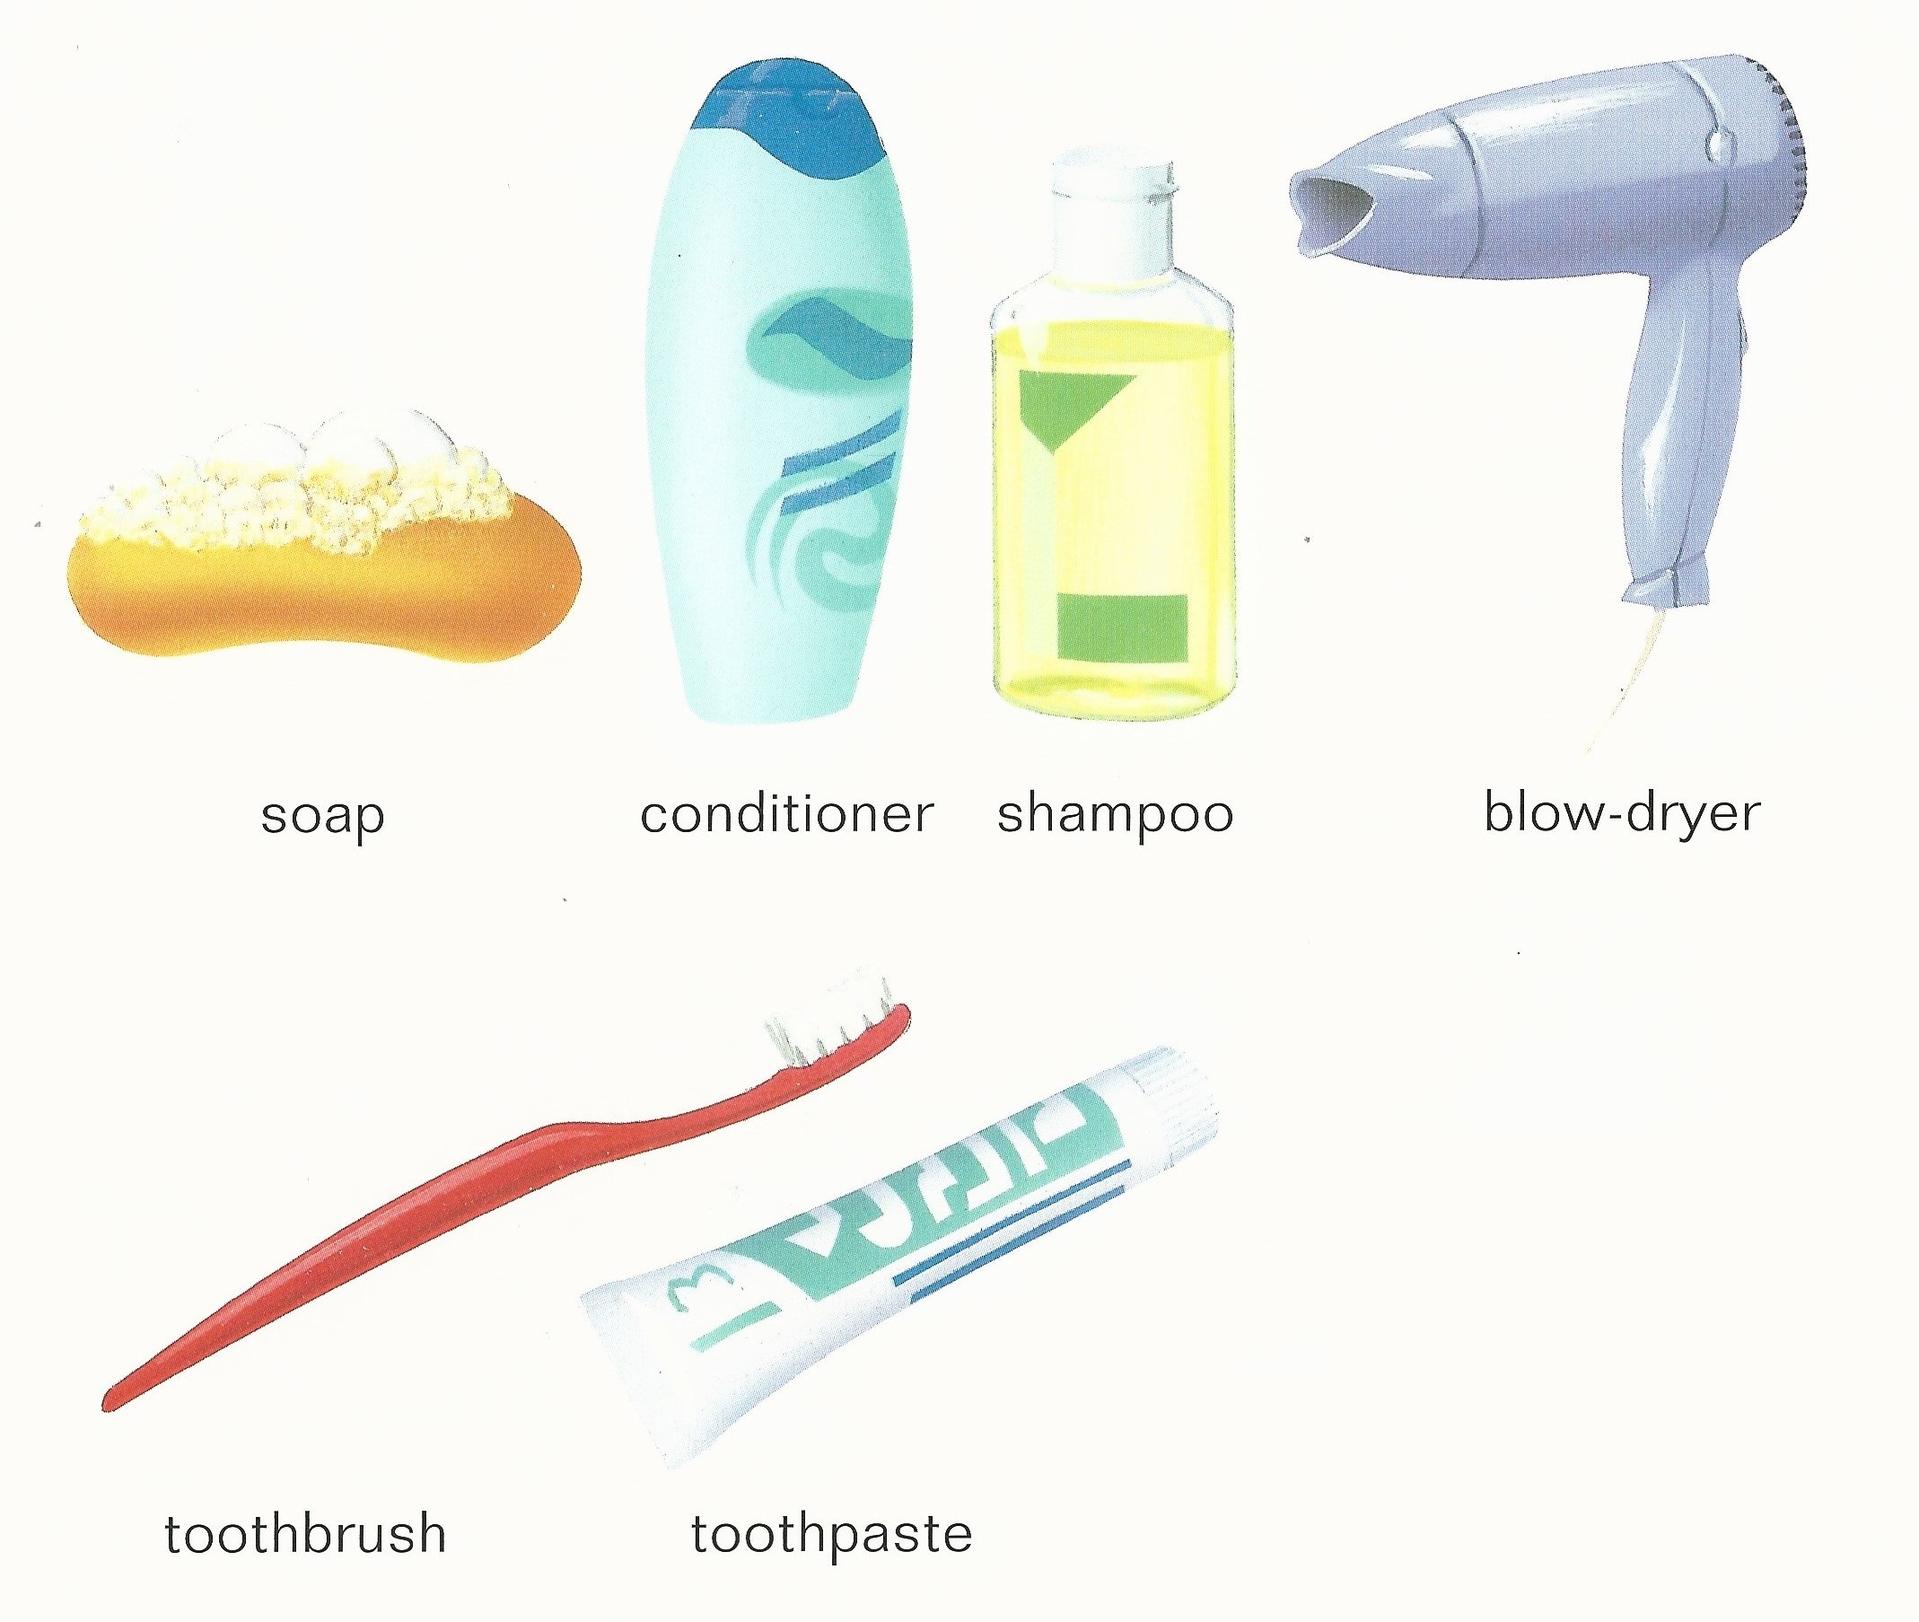 上图被归类入洗漱用品,显而易见的其中的conditioner是护发素的意思(a